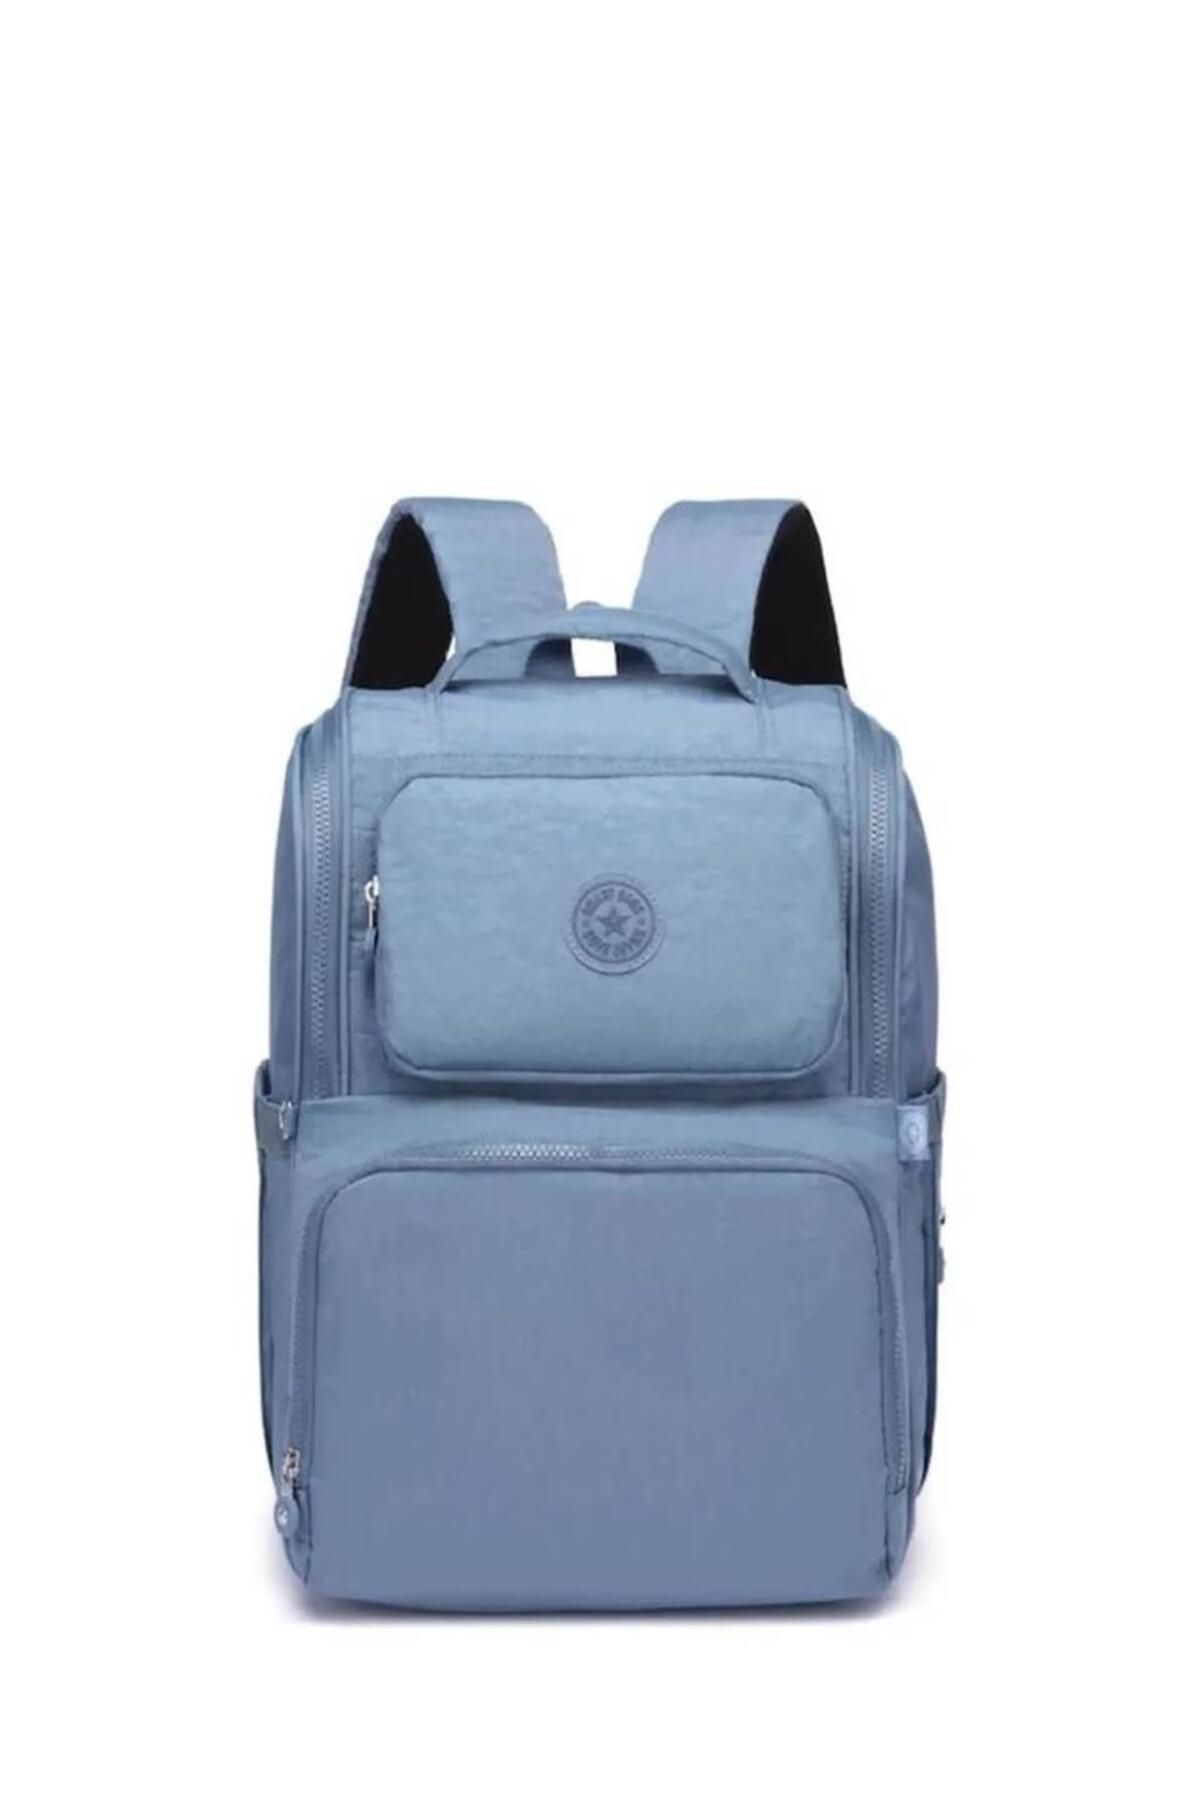 Smart Bags 3000 Sırt Çantası Buz Mavi